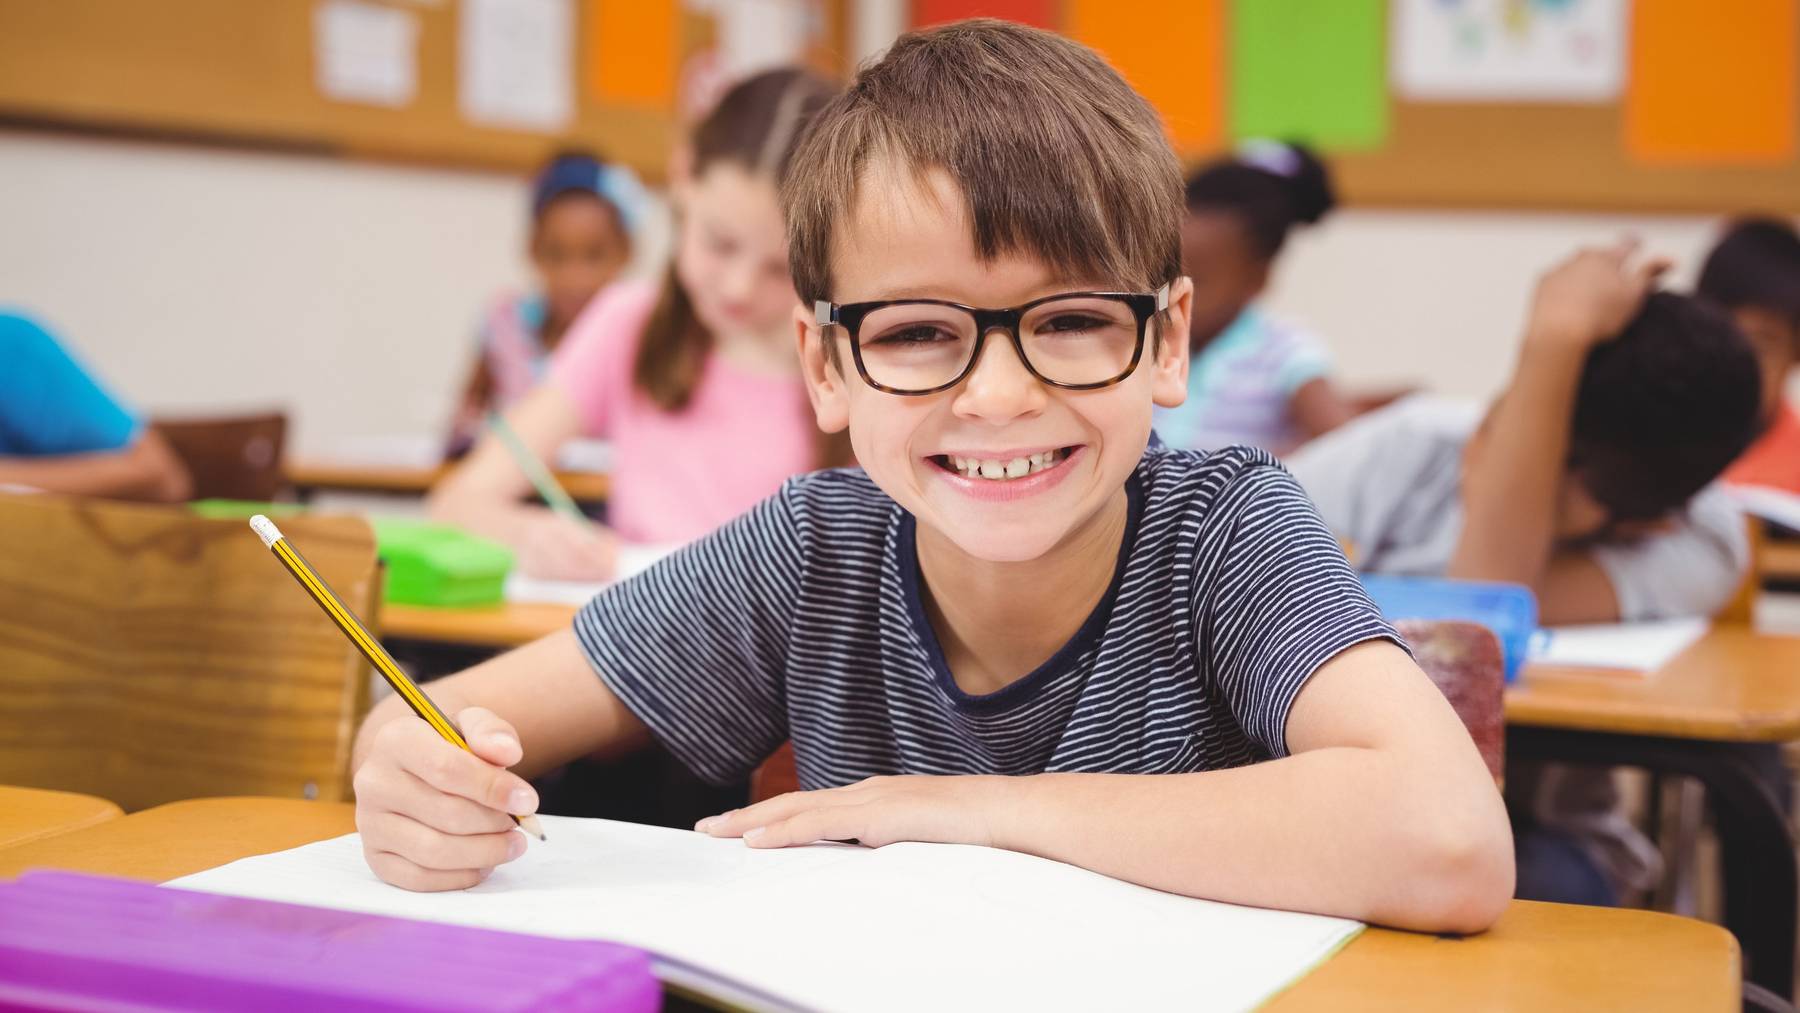 Immer mehr Kinder tragen schon in der Primarschule eine Brille. (Symbolbild)